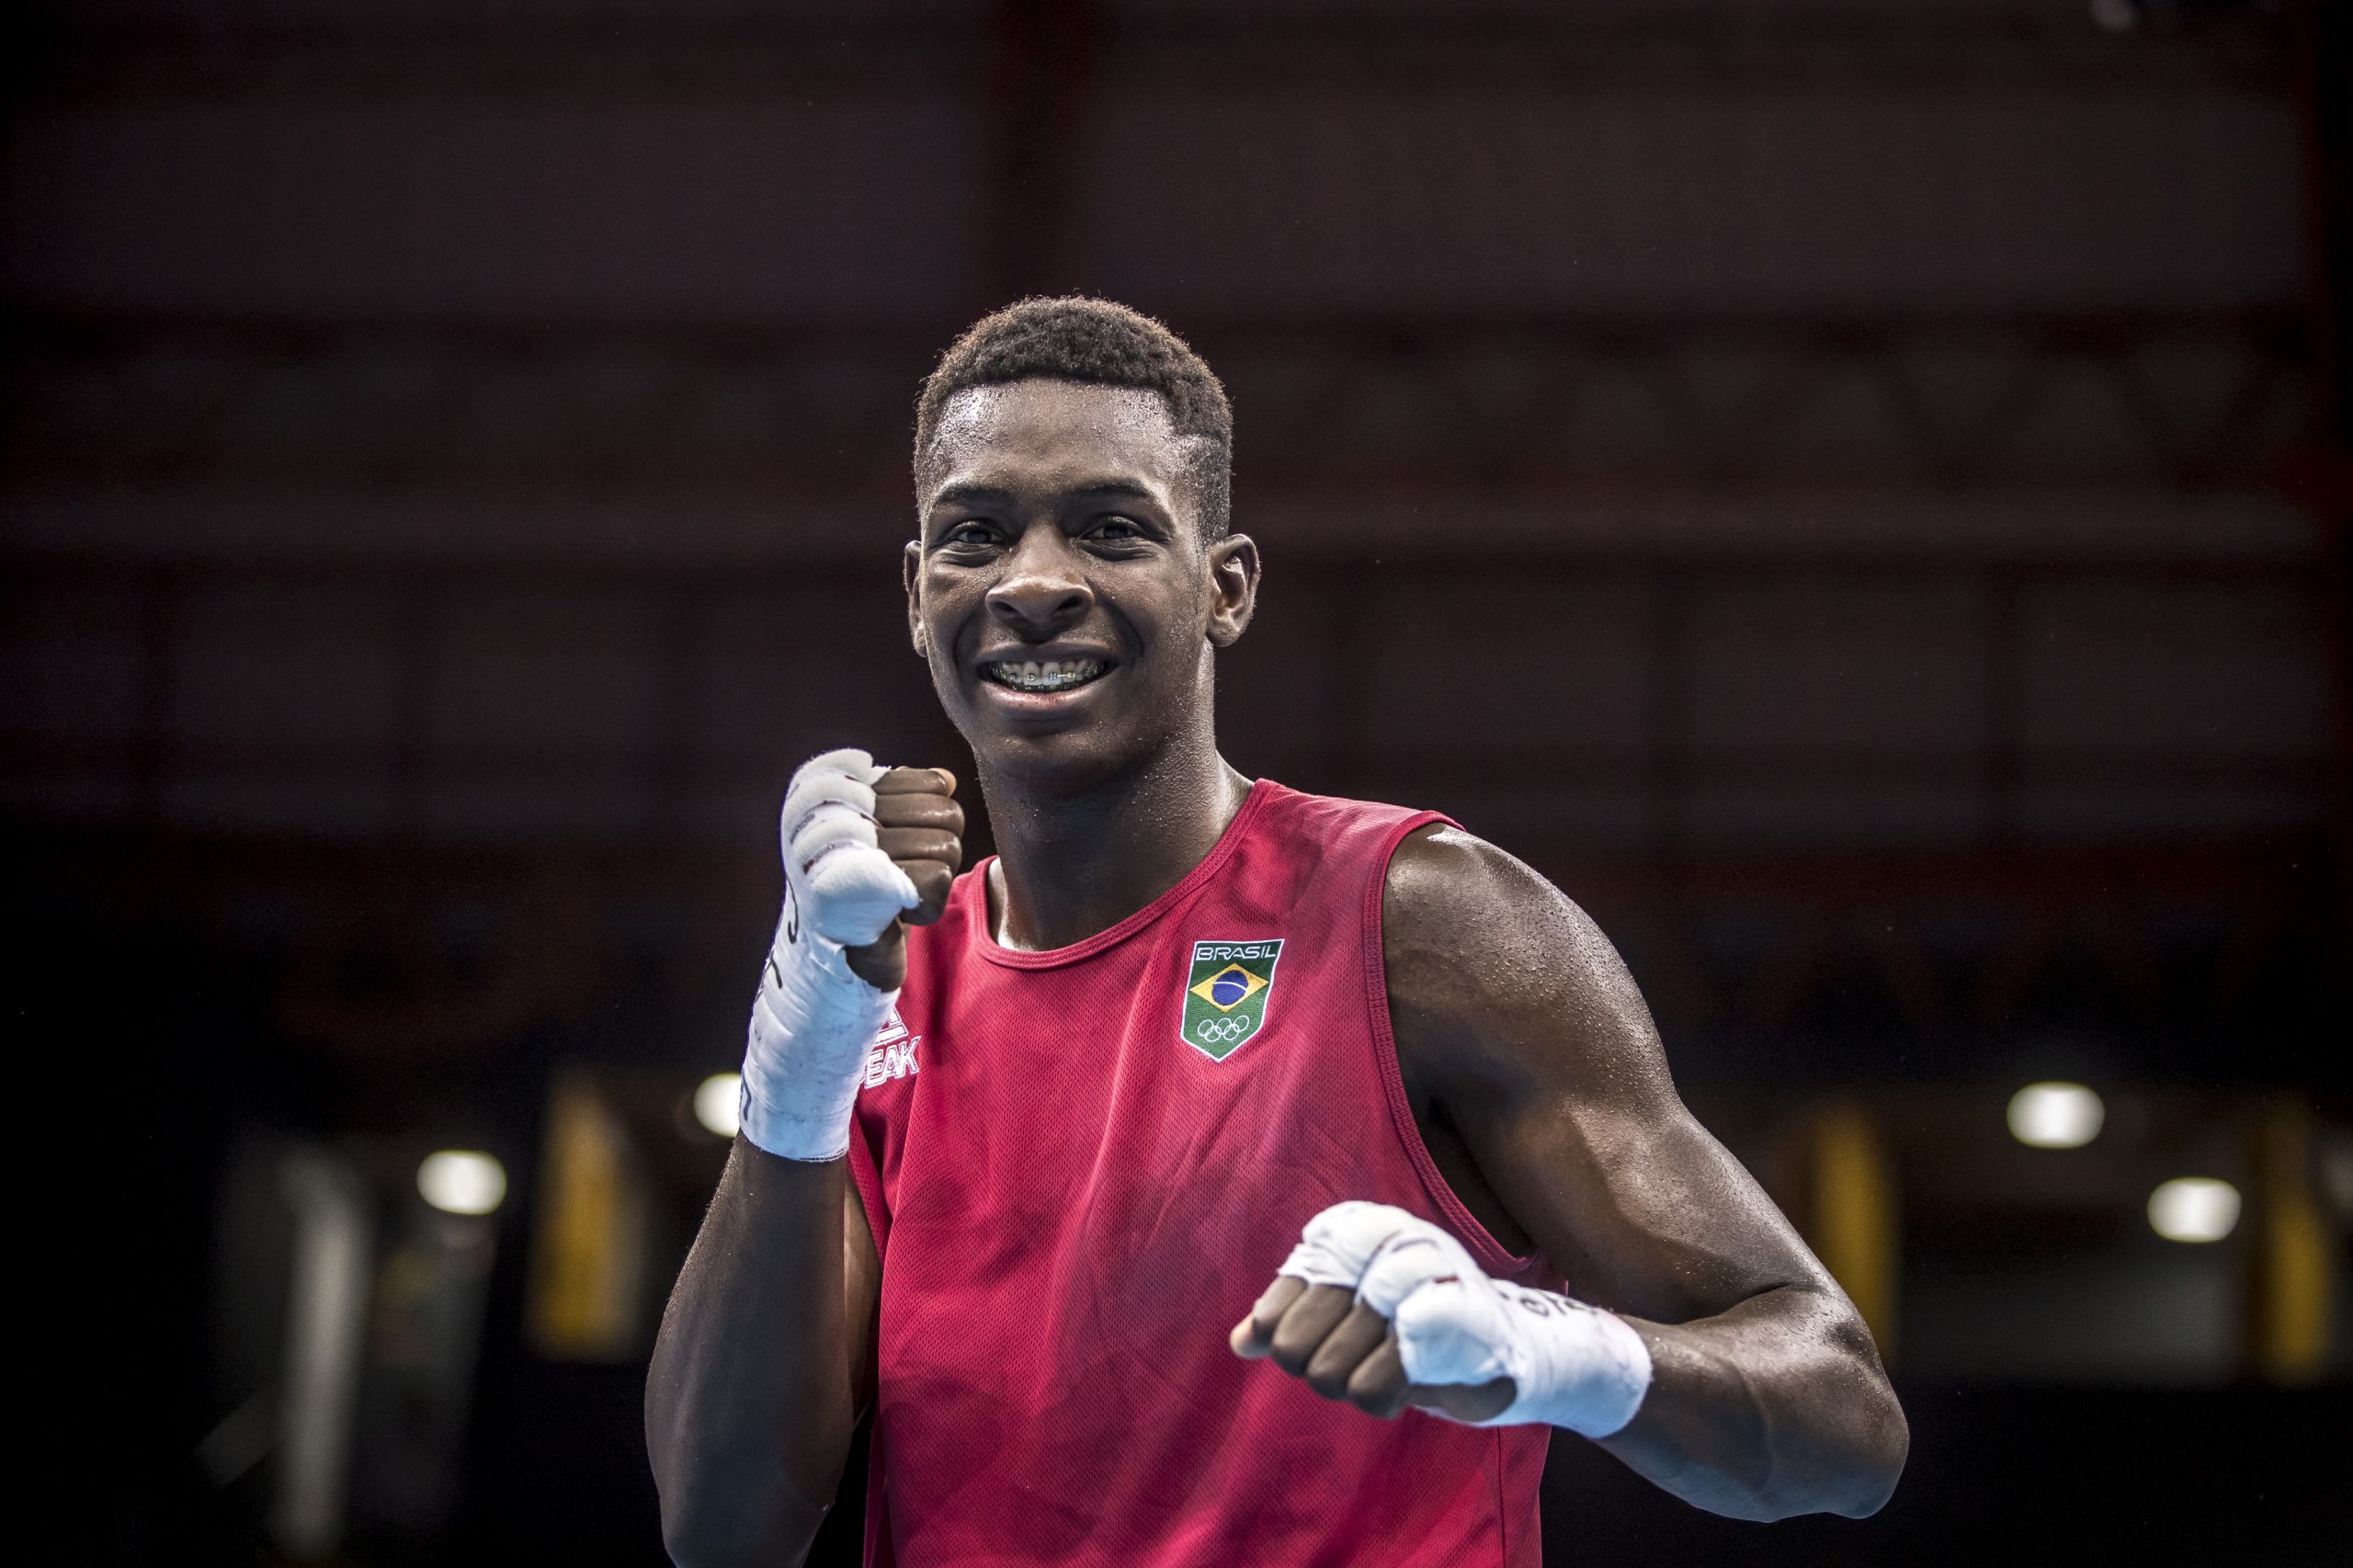 Boxe: Keno Marley vence chinês e segue para às quartas dos Jogos Olímpicos